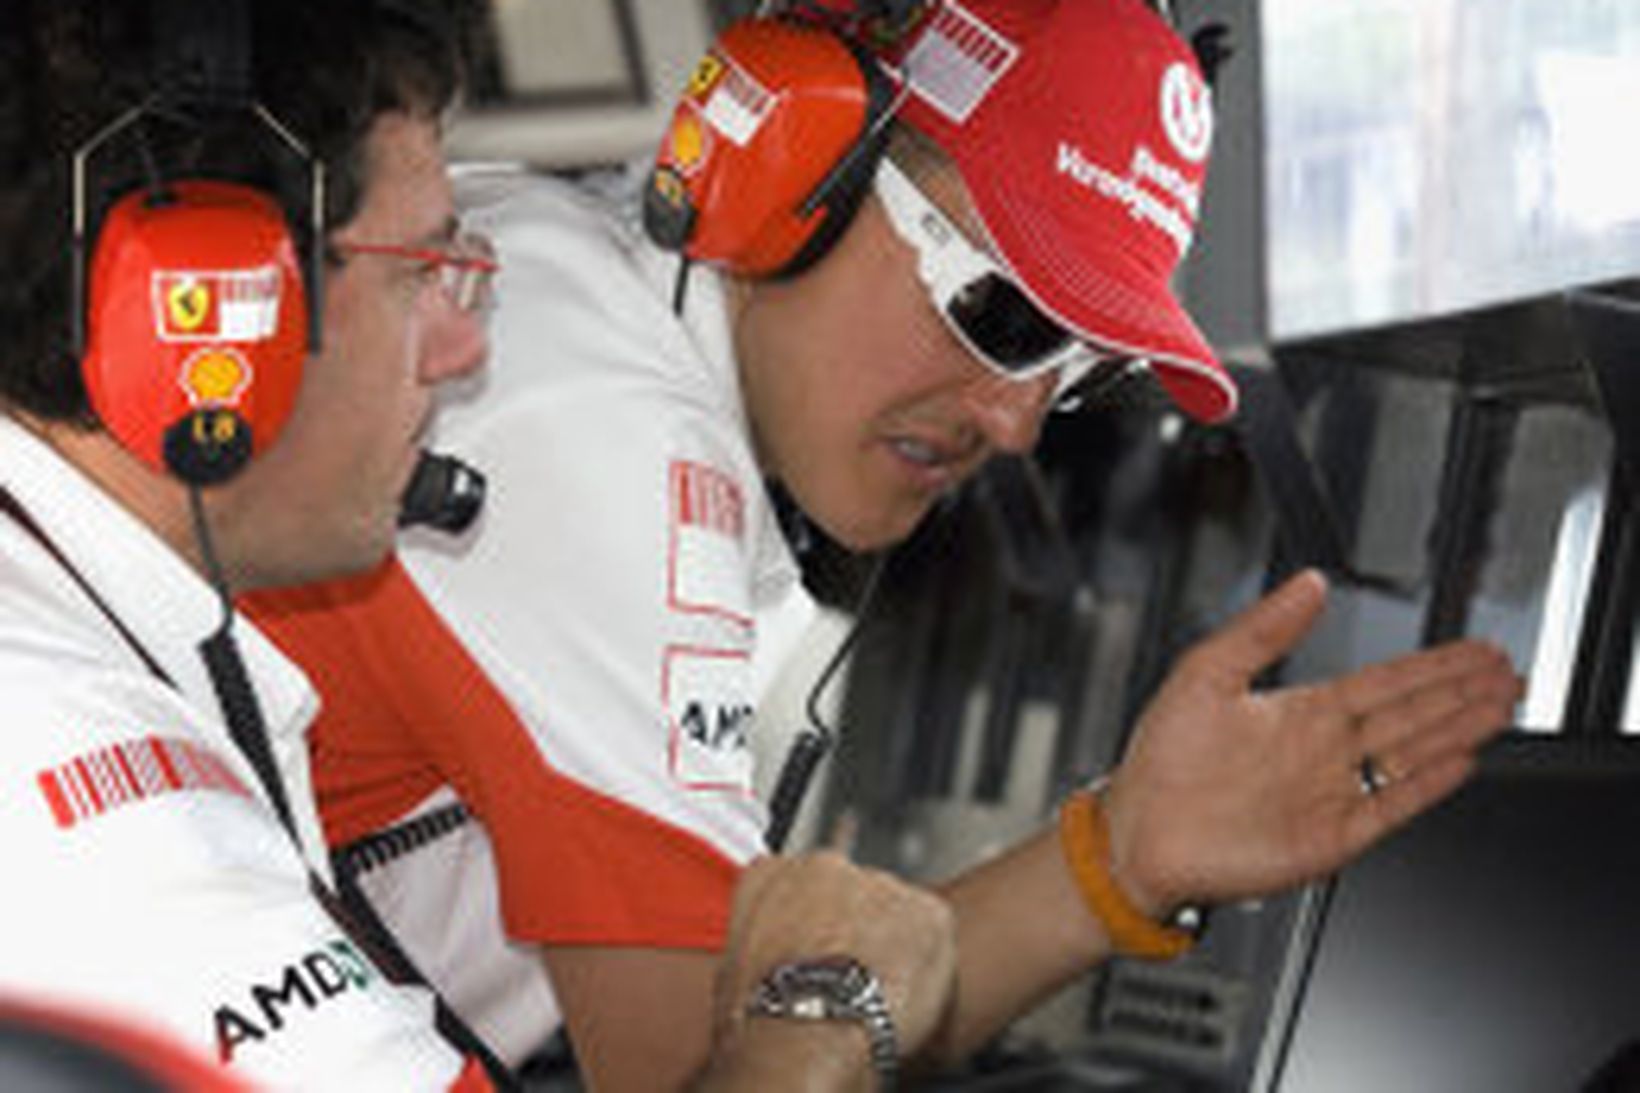 Schumacher óhress á stjórnborði Ferrari í móti.